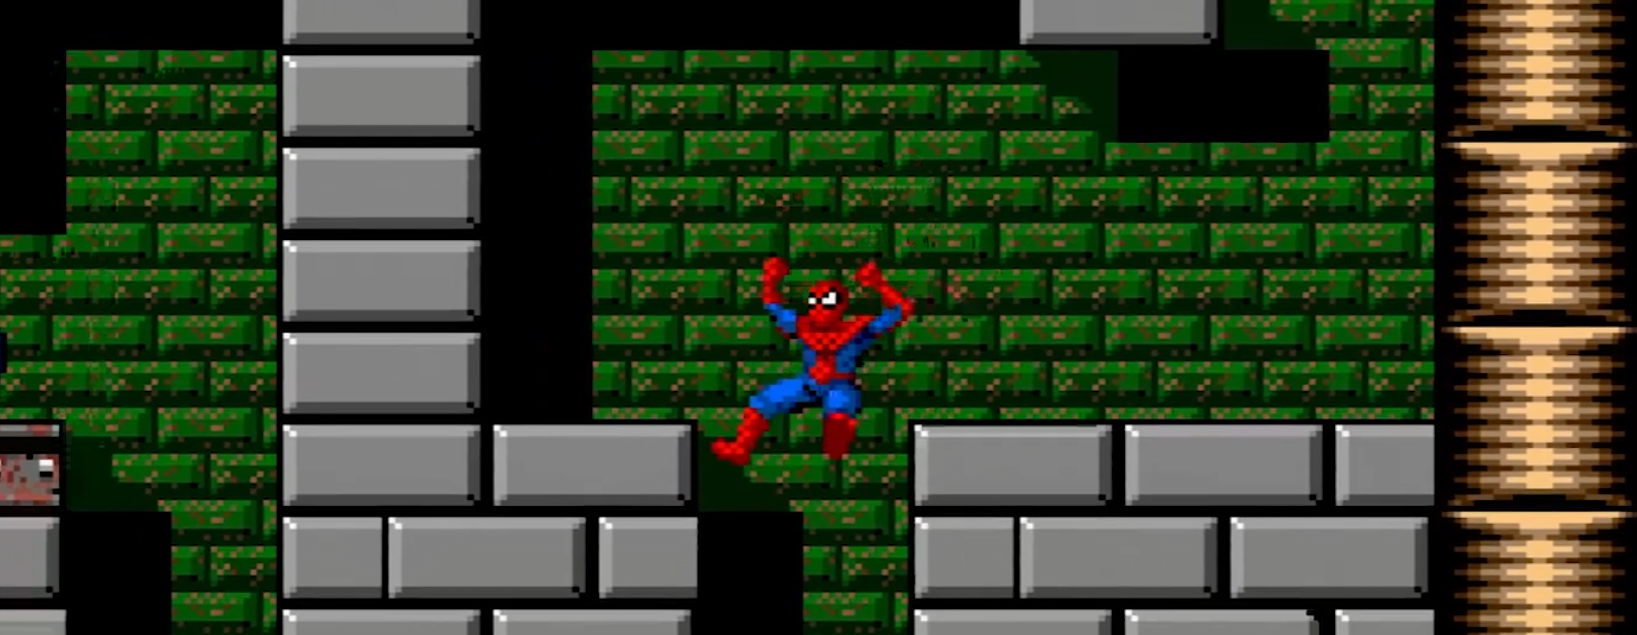 Spider-Man and The X-Men Arcades Revenge Sega Genesis 